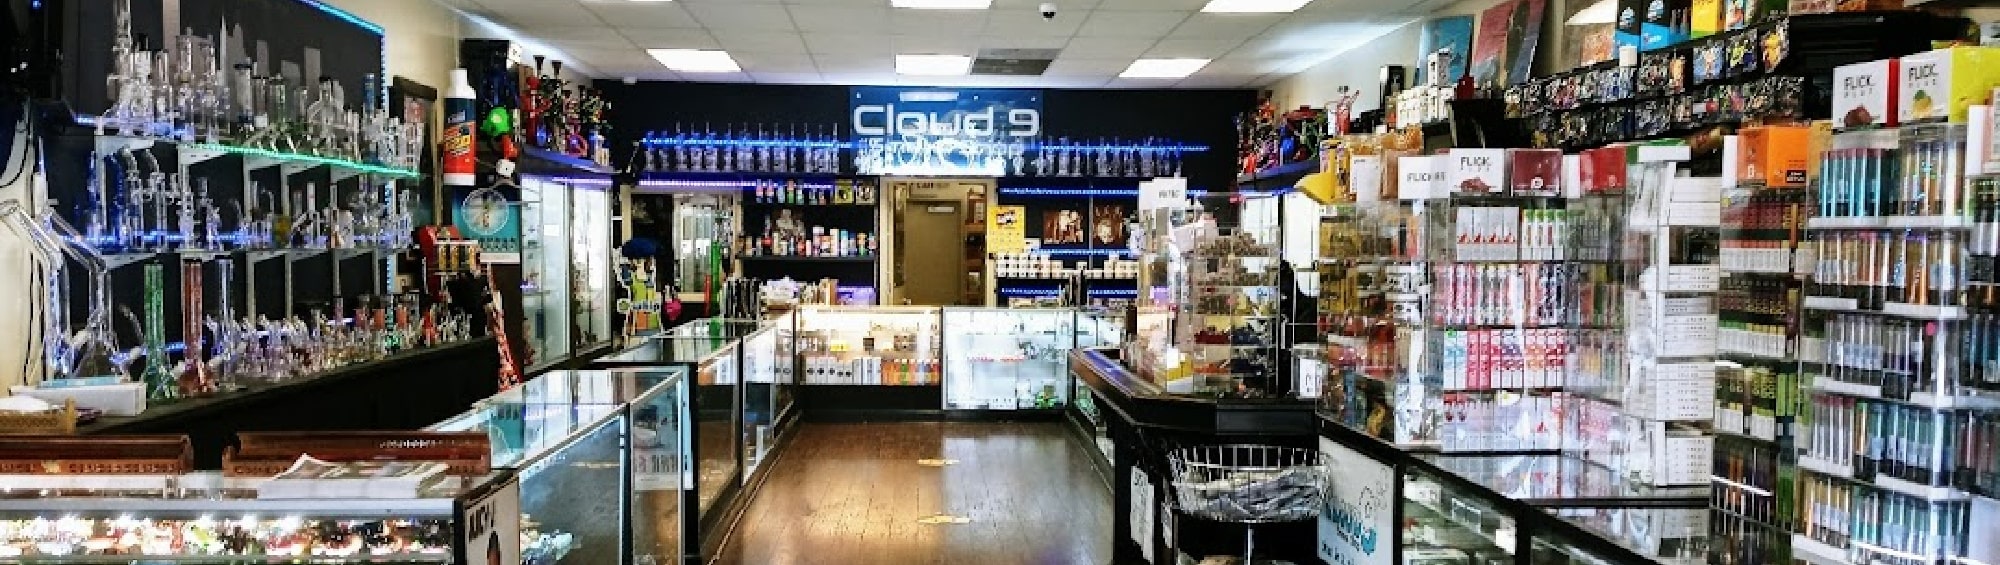 image of cloud 9 smoke shop & vape shop in memphis tn